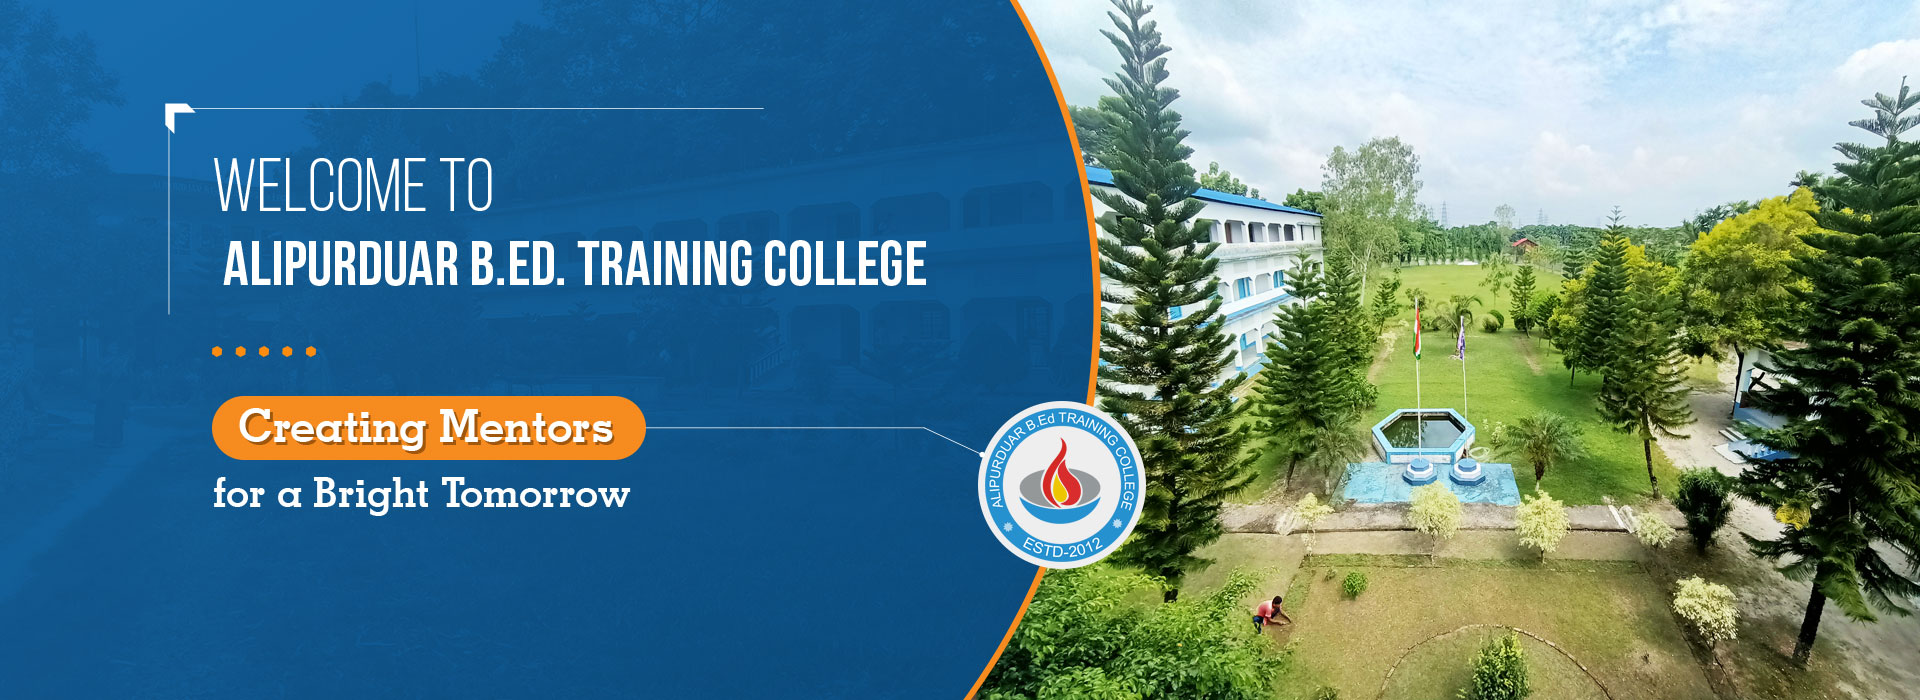 Alipurduar B.Ed. Training College